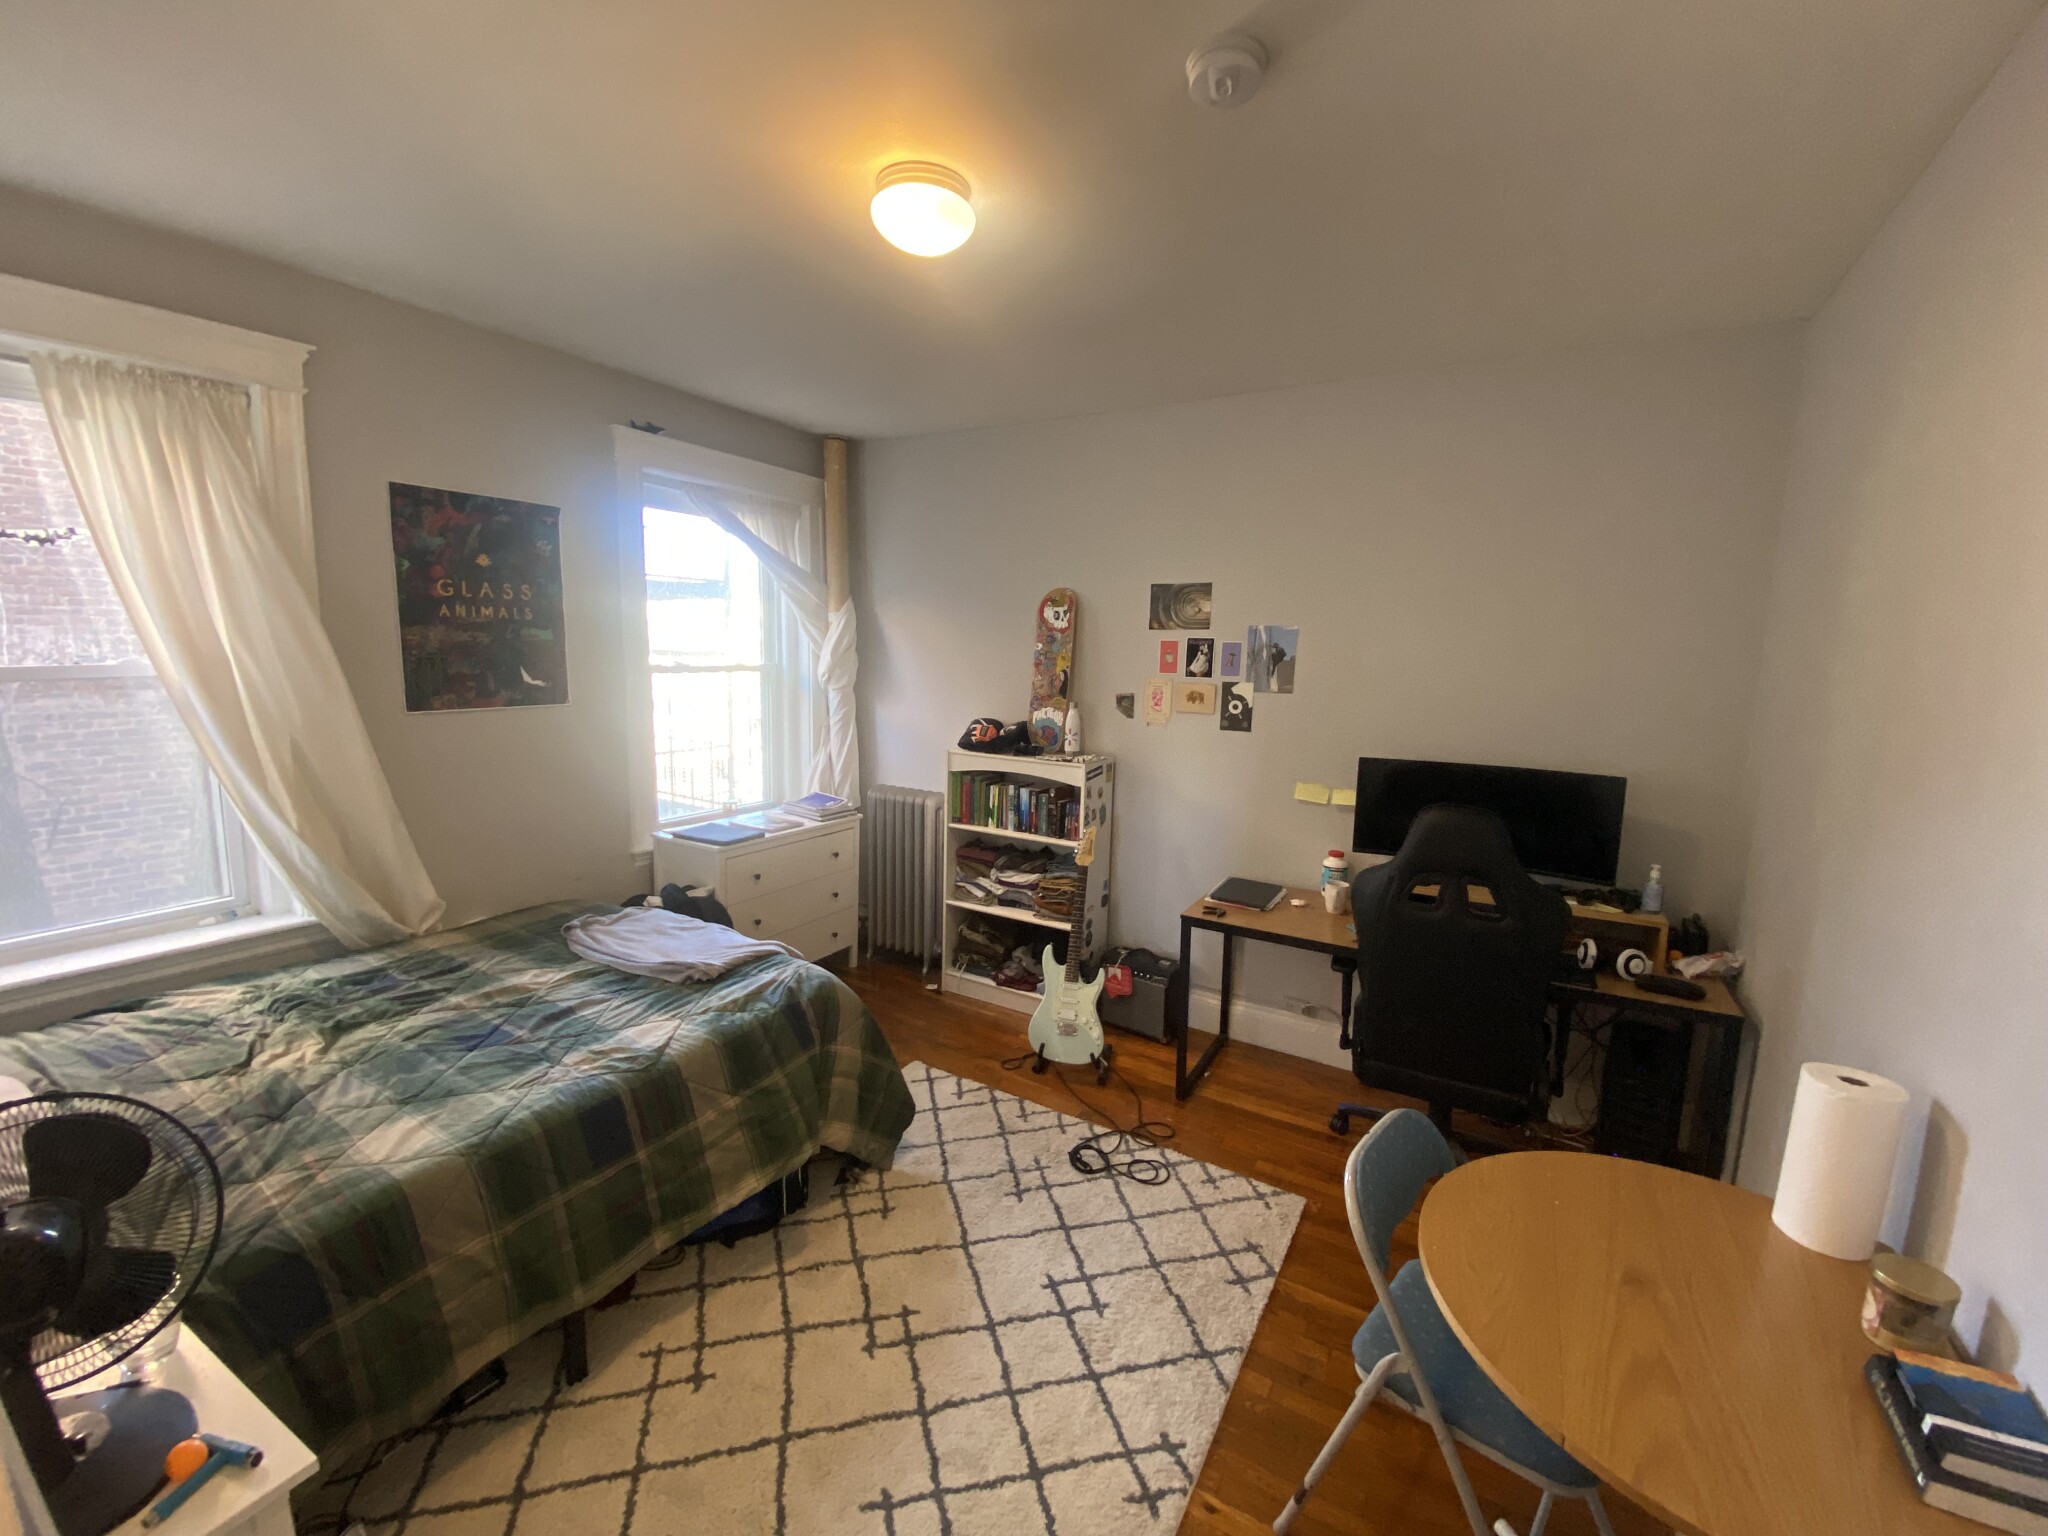 Studio, 1 Bath apartment in Boston for $2,200